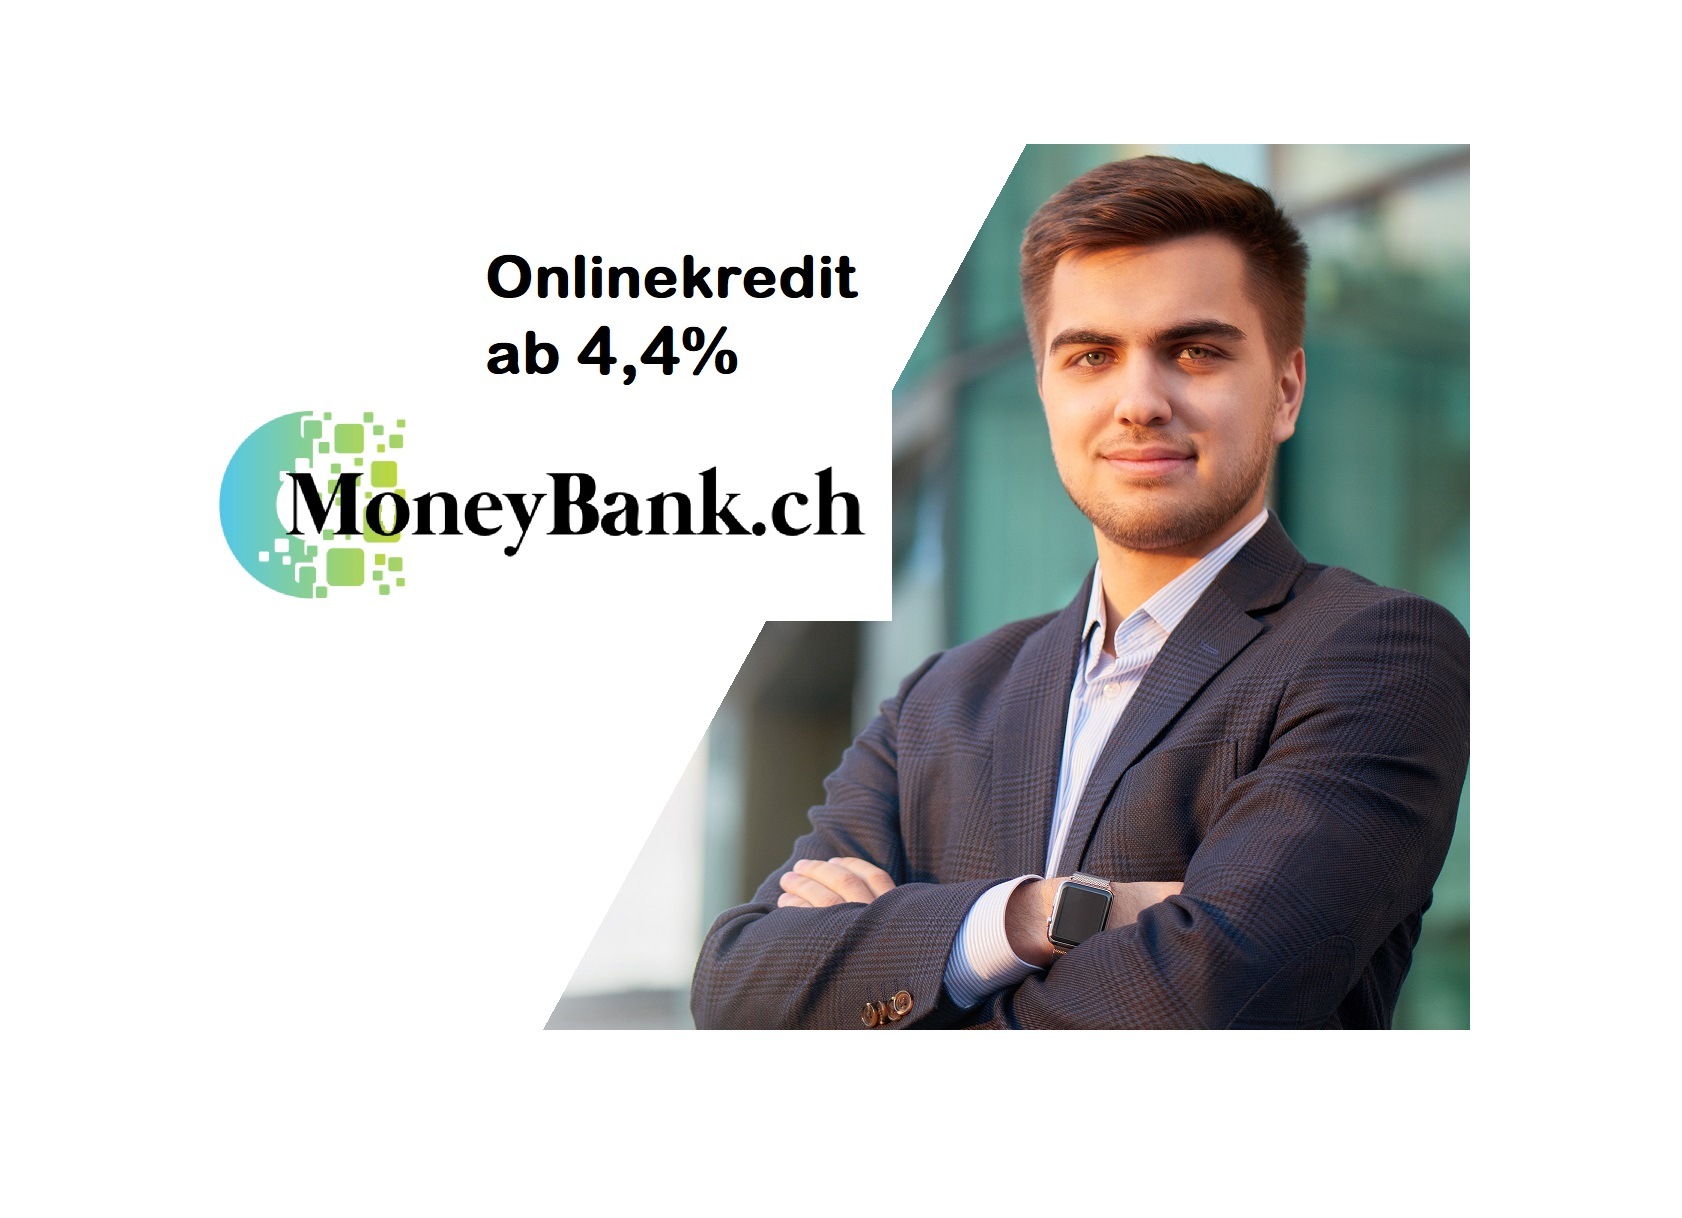 Moneybank .ch – Onlinekredit seit über 15 Jahren